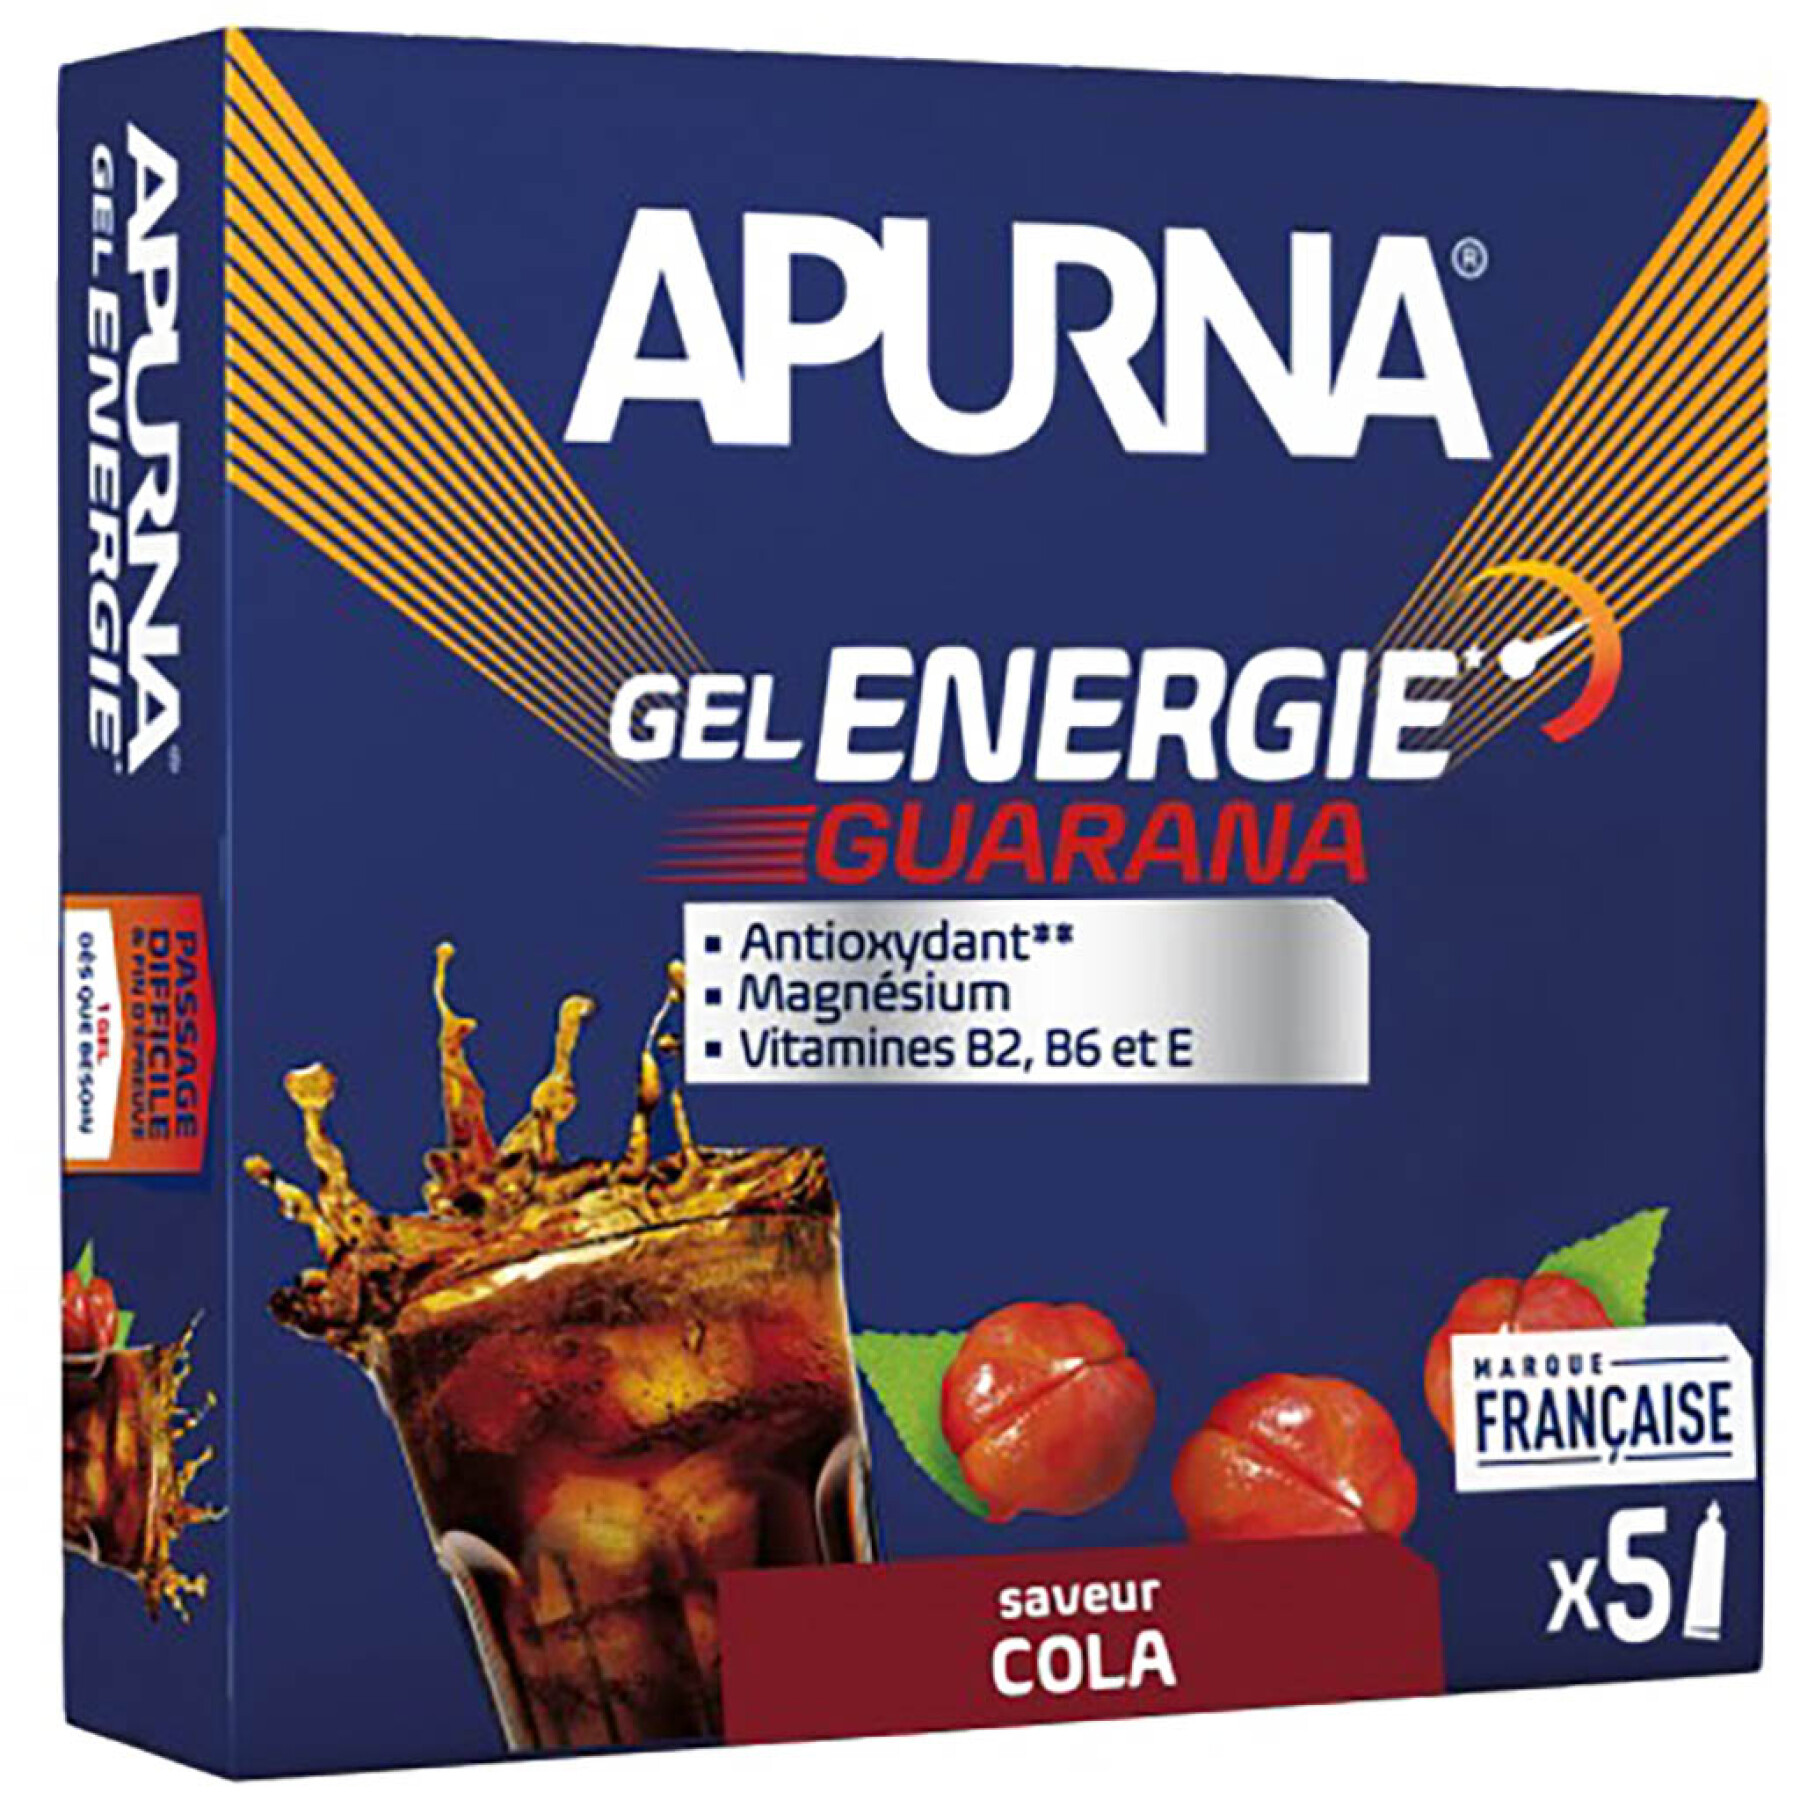 5 energiegels guarana cola moeilijke doorgang Apurna